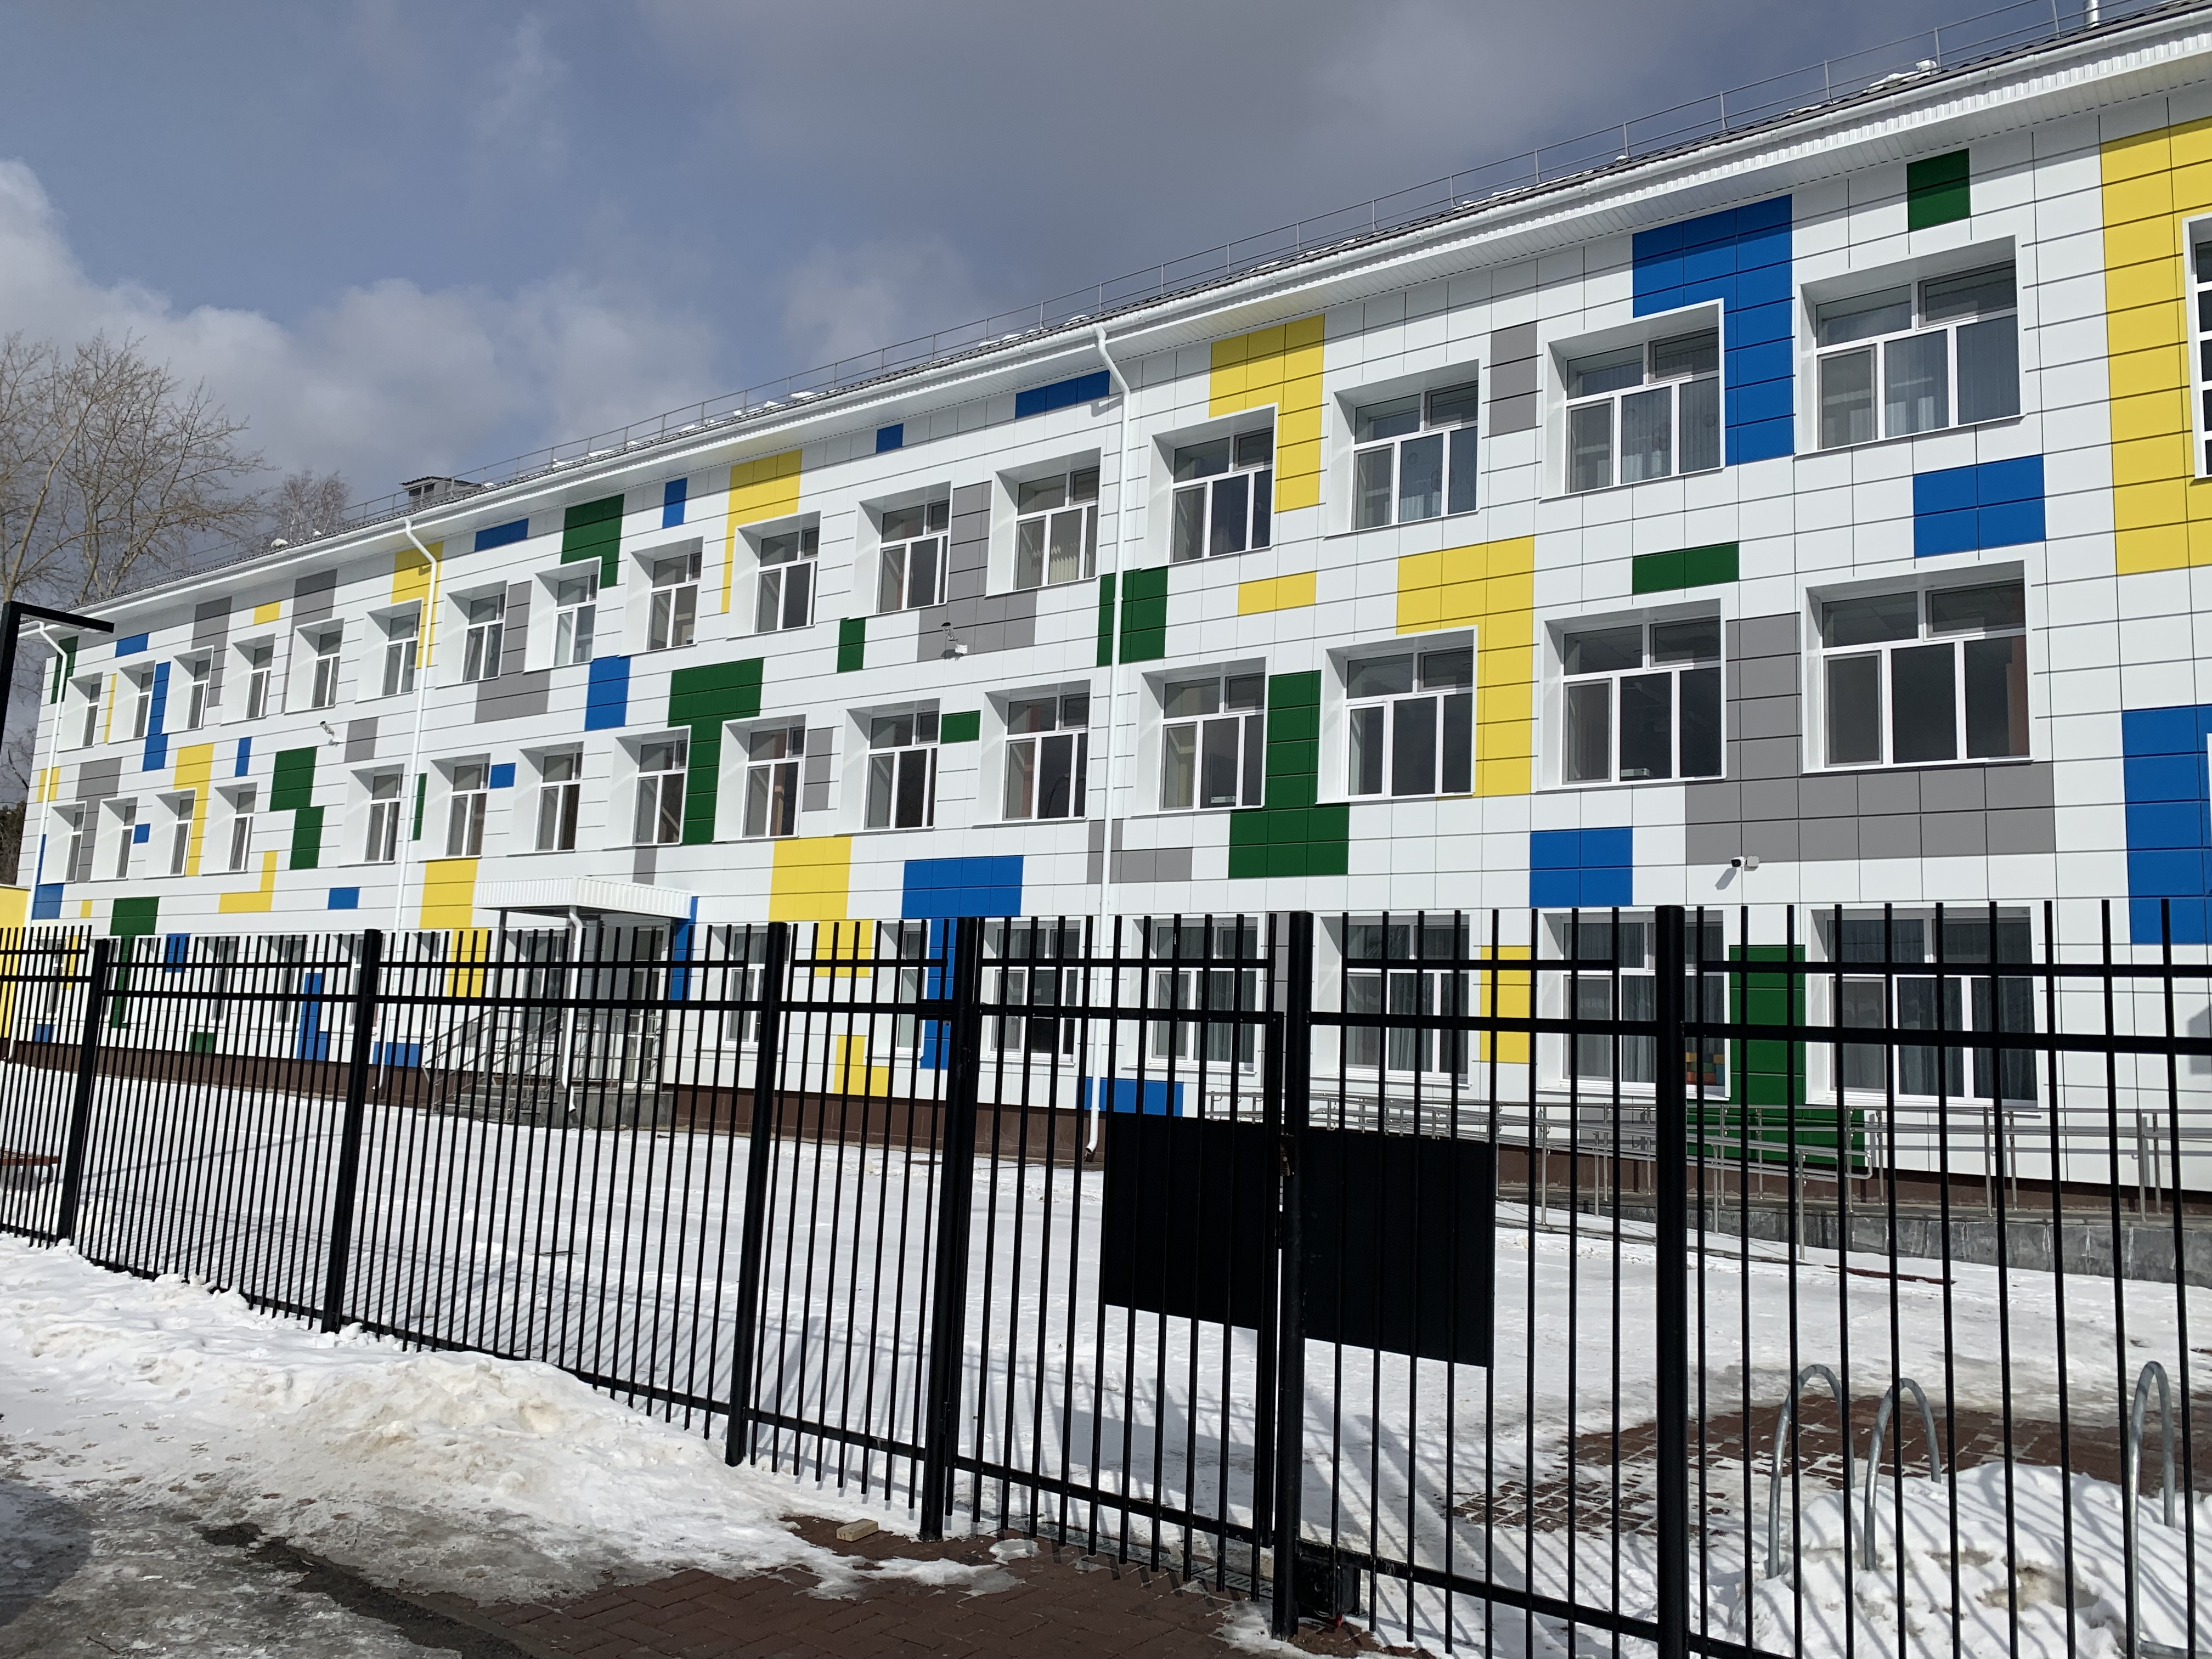 Михаил Клименко проверил готовность реконструированной школы к открытию